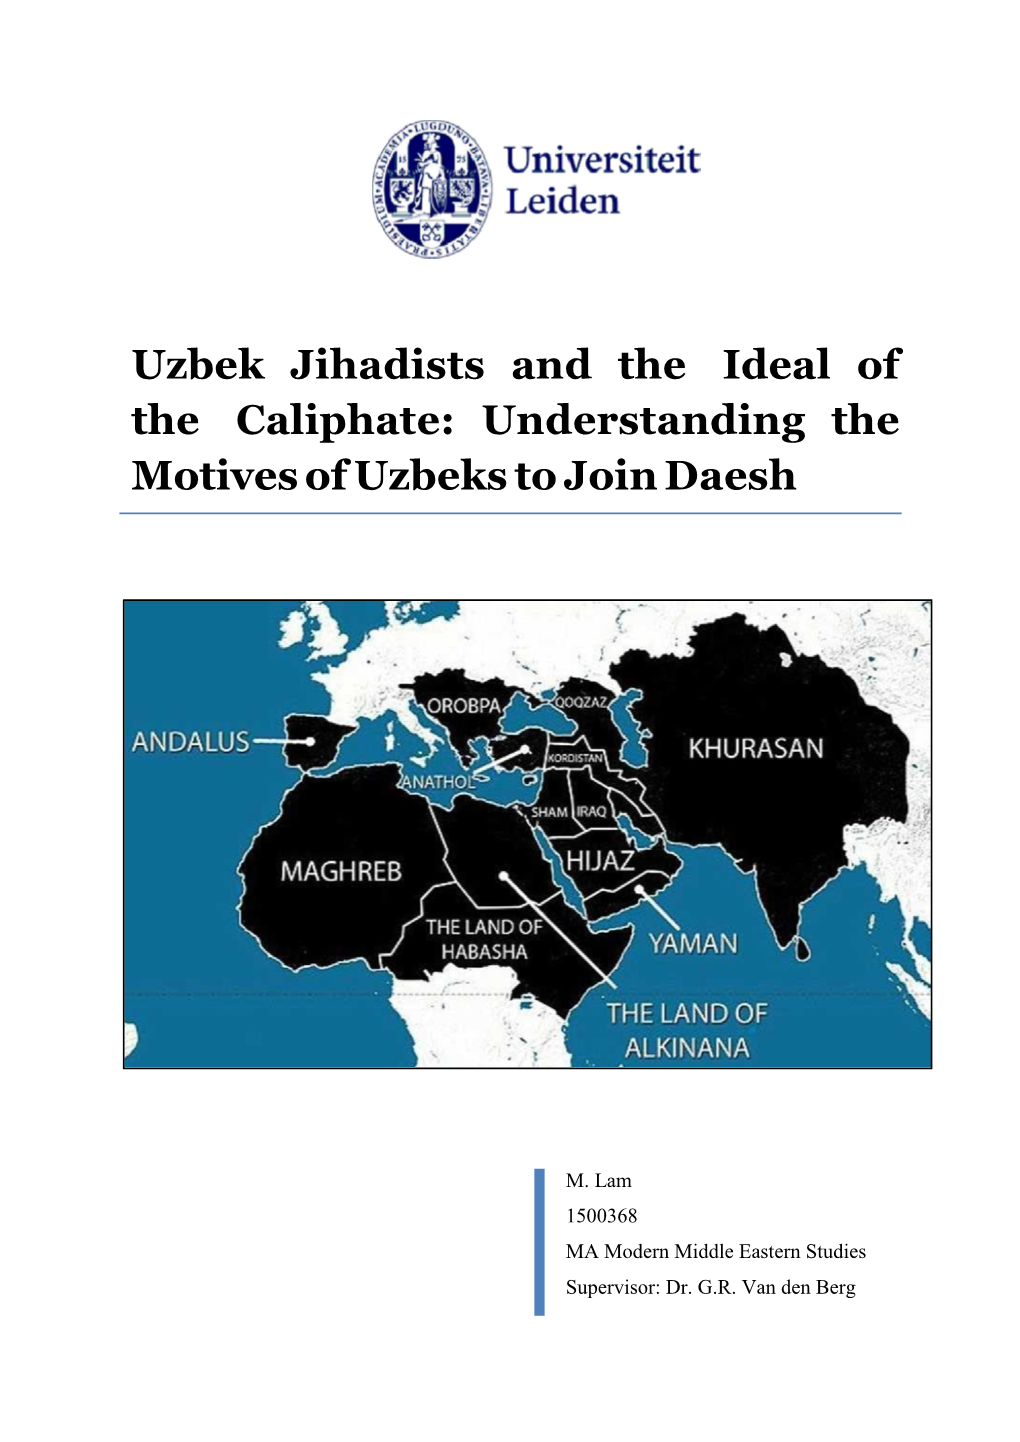 Understanding the Motives of Uzbeks to Join Daesh